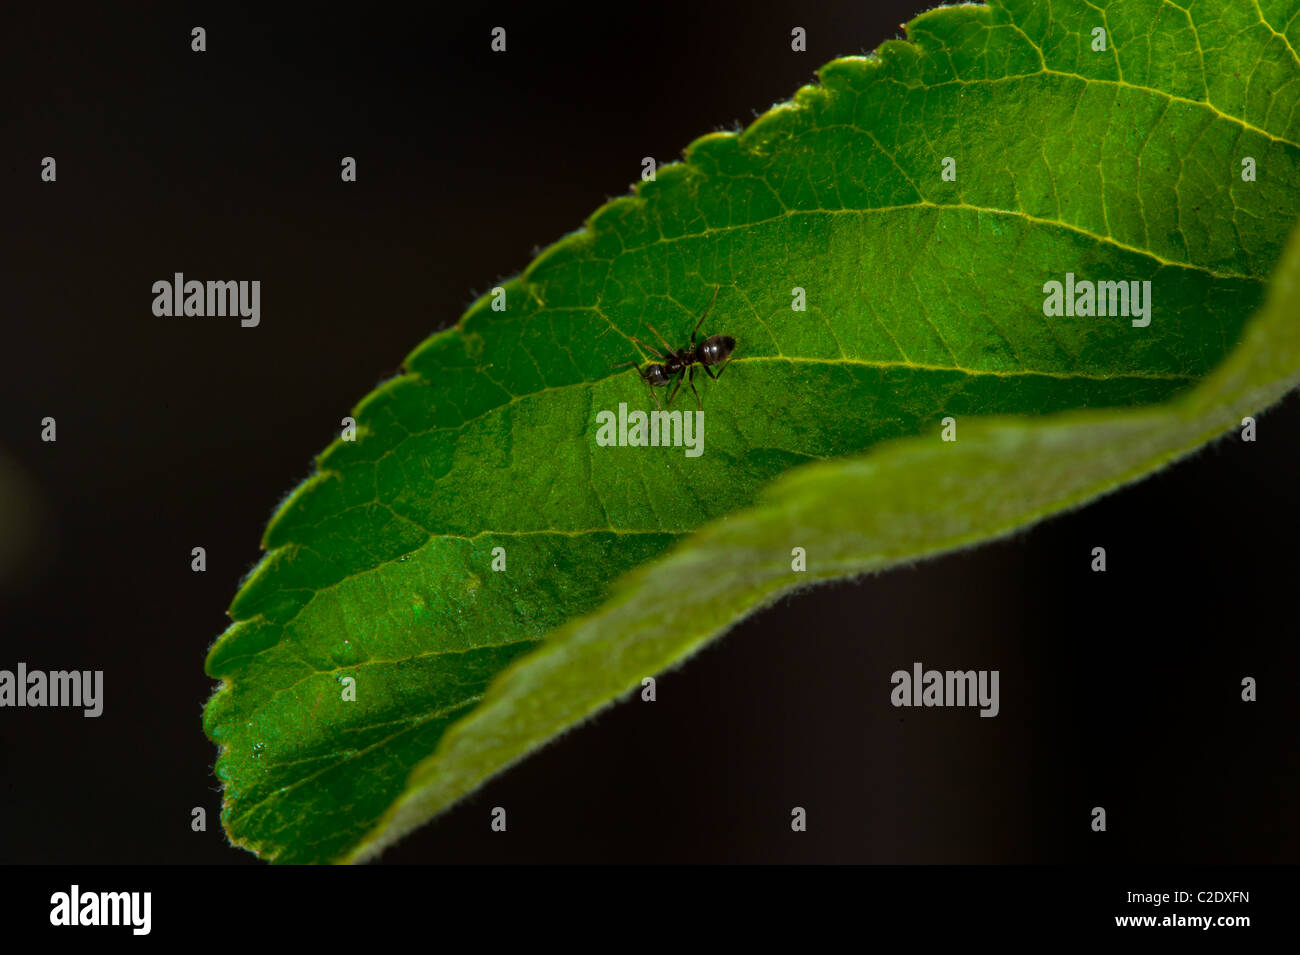 Ameise auf ein grünes Blatt mit schwarzem Hintergrund Stockfoto